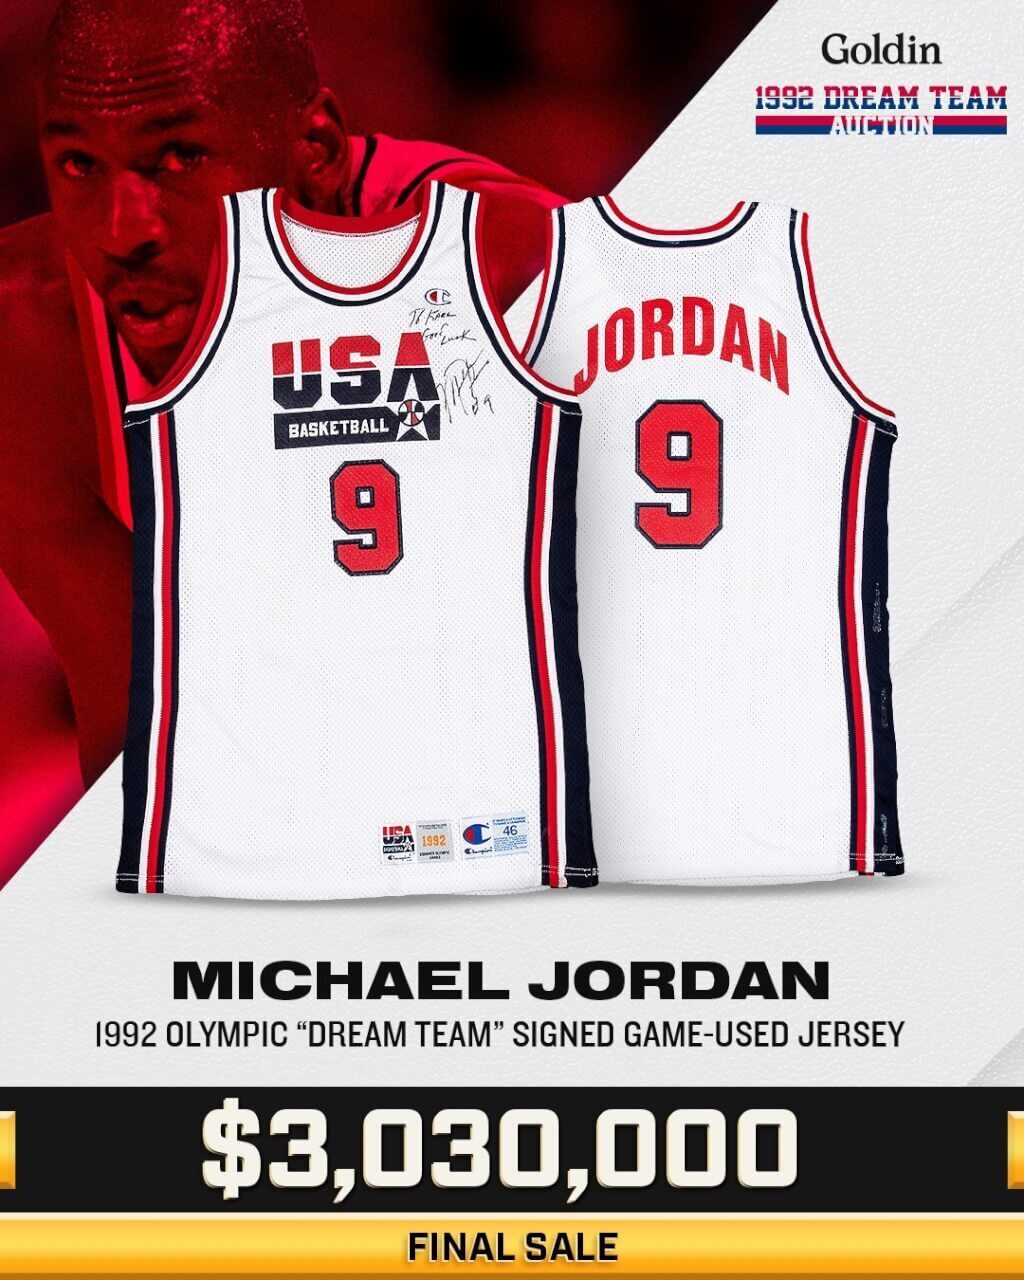 Chiếc áo thi đấu của Jordan khi tham gia Olympic 1992 được bán với mức giá 3,03 triệu đô la Mỹ (khoảng 93 triệu Đài tệ).